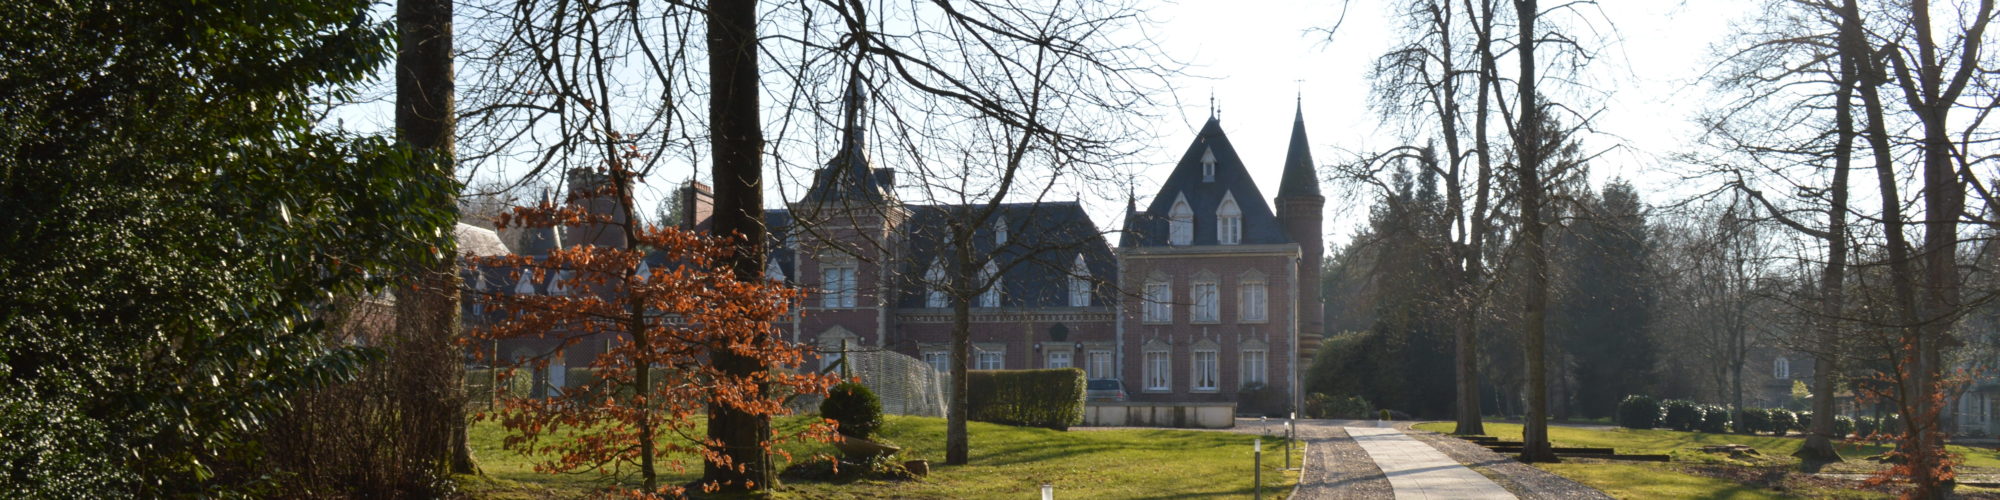 Communique de presse - Château Le Vaillant - Collège Lycée Esport - Le «Poudlard» du Esport accueillera ses premiers élèves en septembre